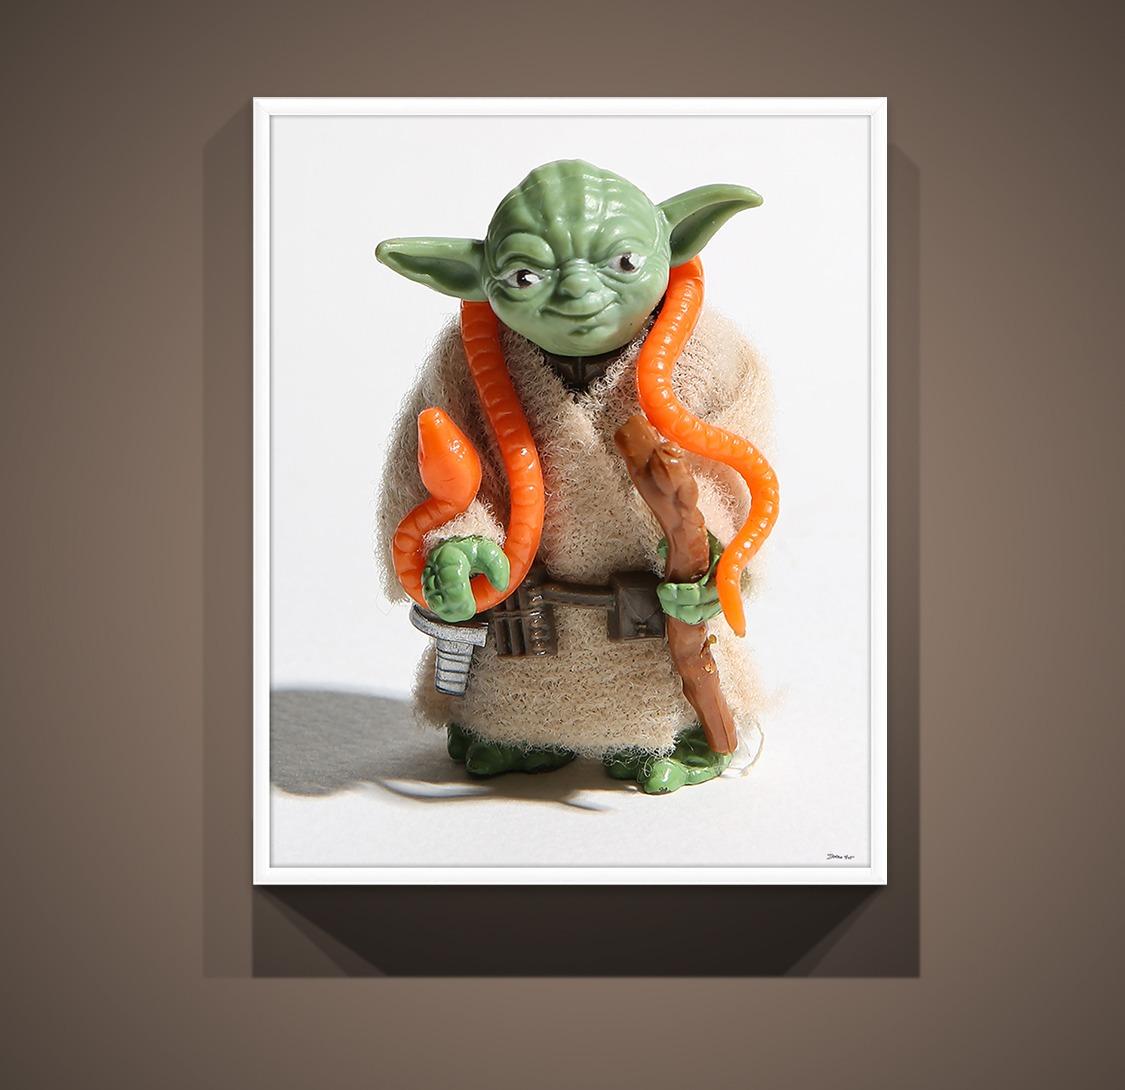 Yoda 30x24 Star Wars, jouets des années 80, photographie, impression d'art pop art - Modernisme américain Photograph par Destro